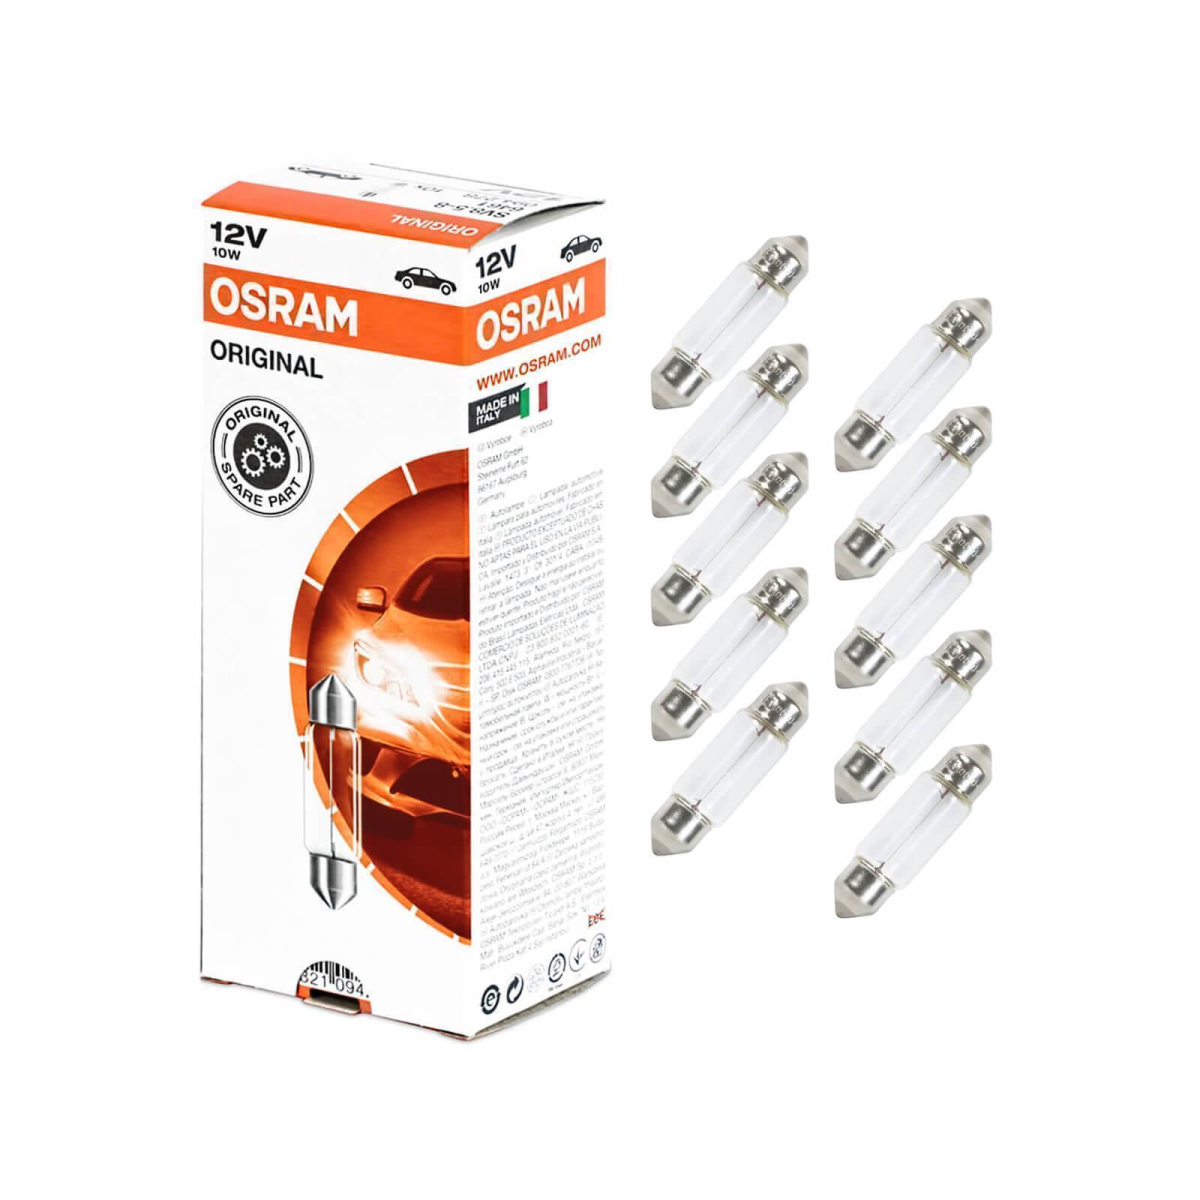 10X Osram Soffitte 36mm Sv8.5-8 Lampe 12V 10 Watt Original Soffitten Glühbirn AH